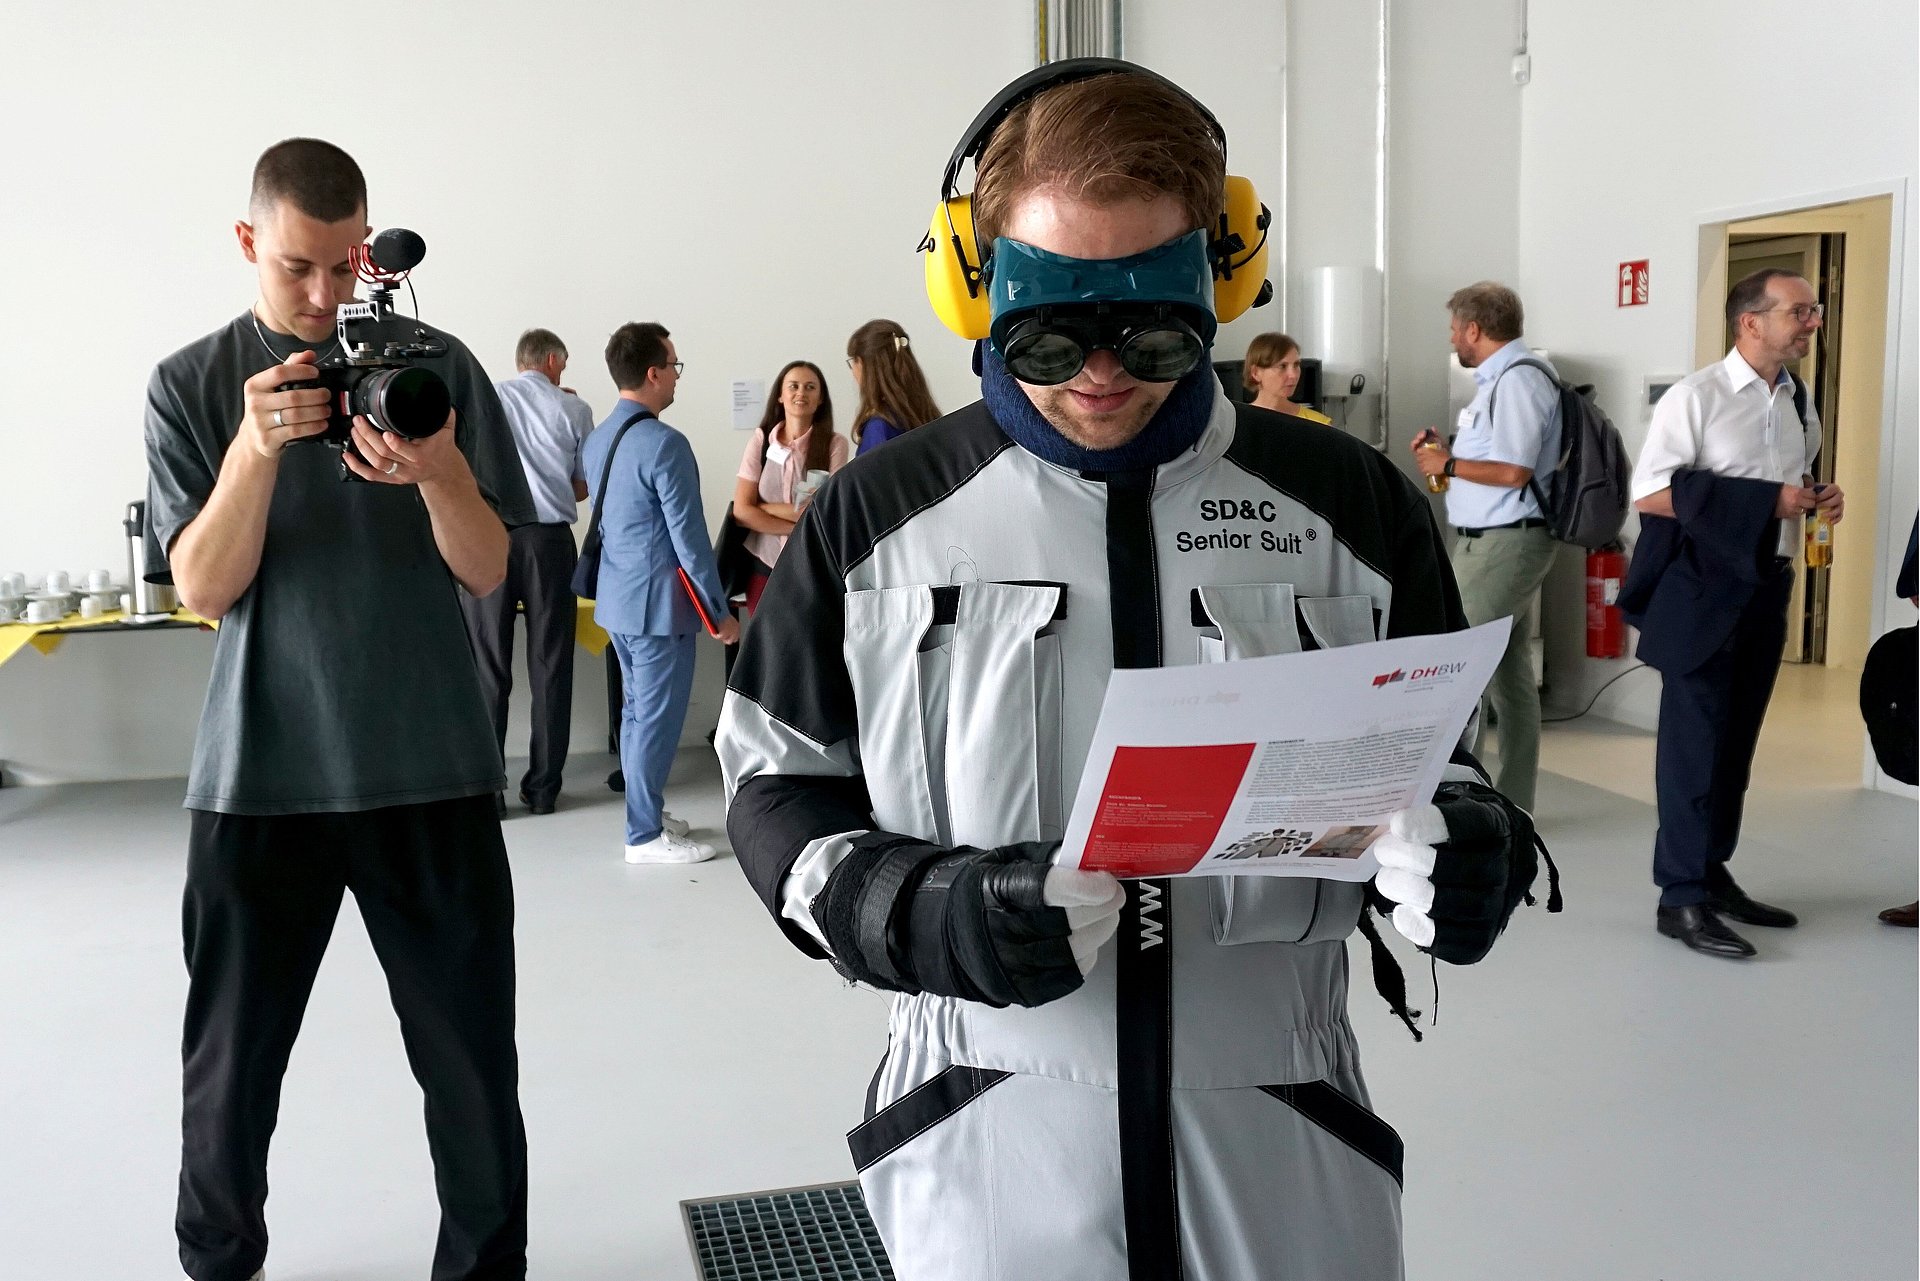 Foto einer Person, die einen Age Suit ausprobiert und versucht ein Dokument zu lesen. Im Hintergrund steht eine Person, die diese Szene fotografiert.